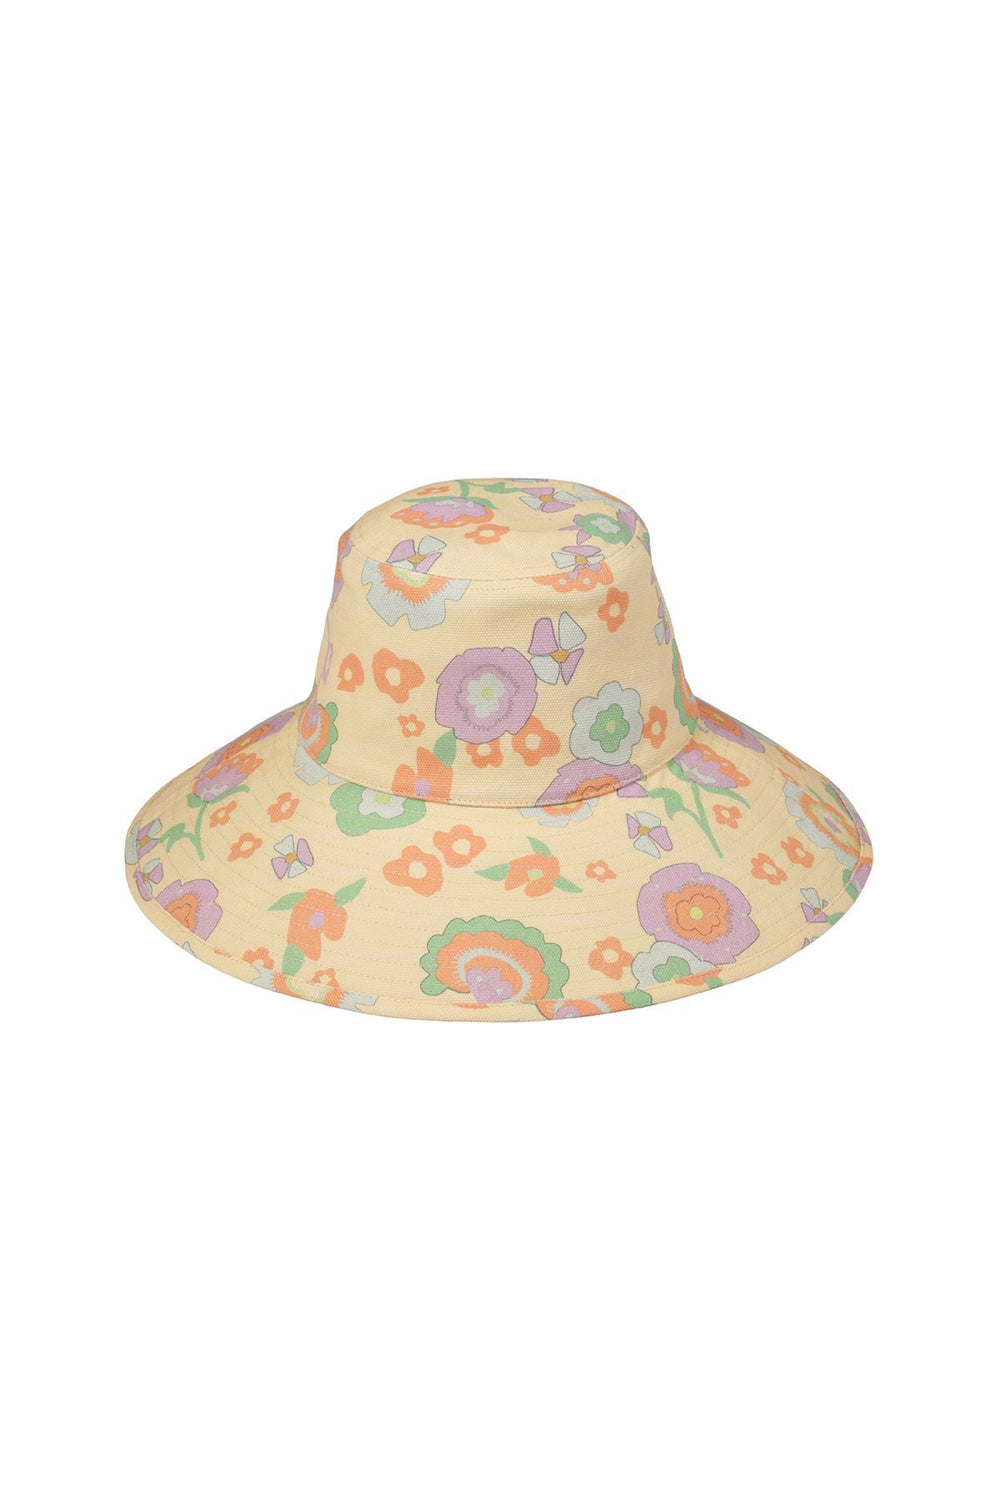 Retro Floral Bucket Hat